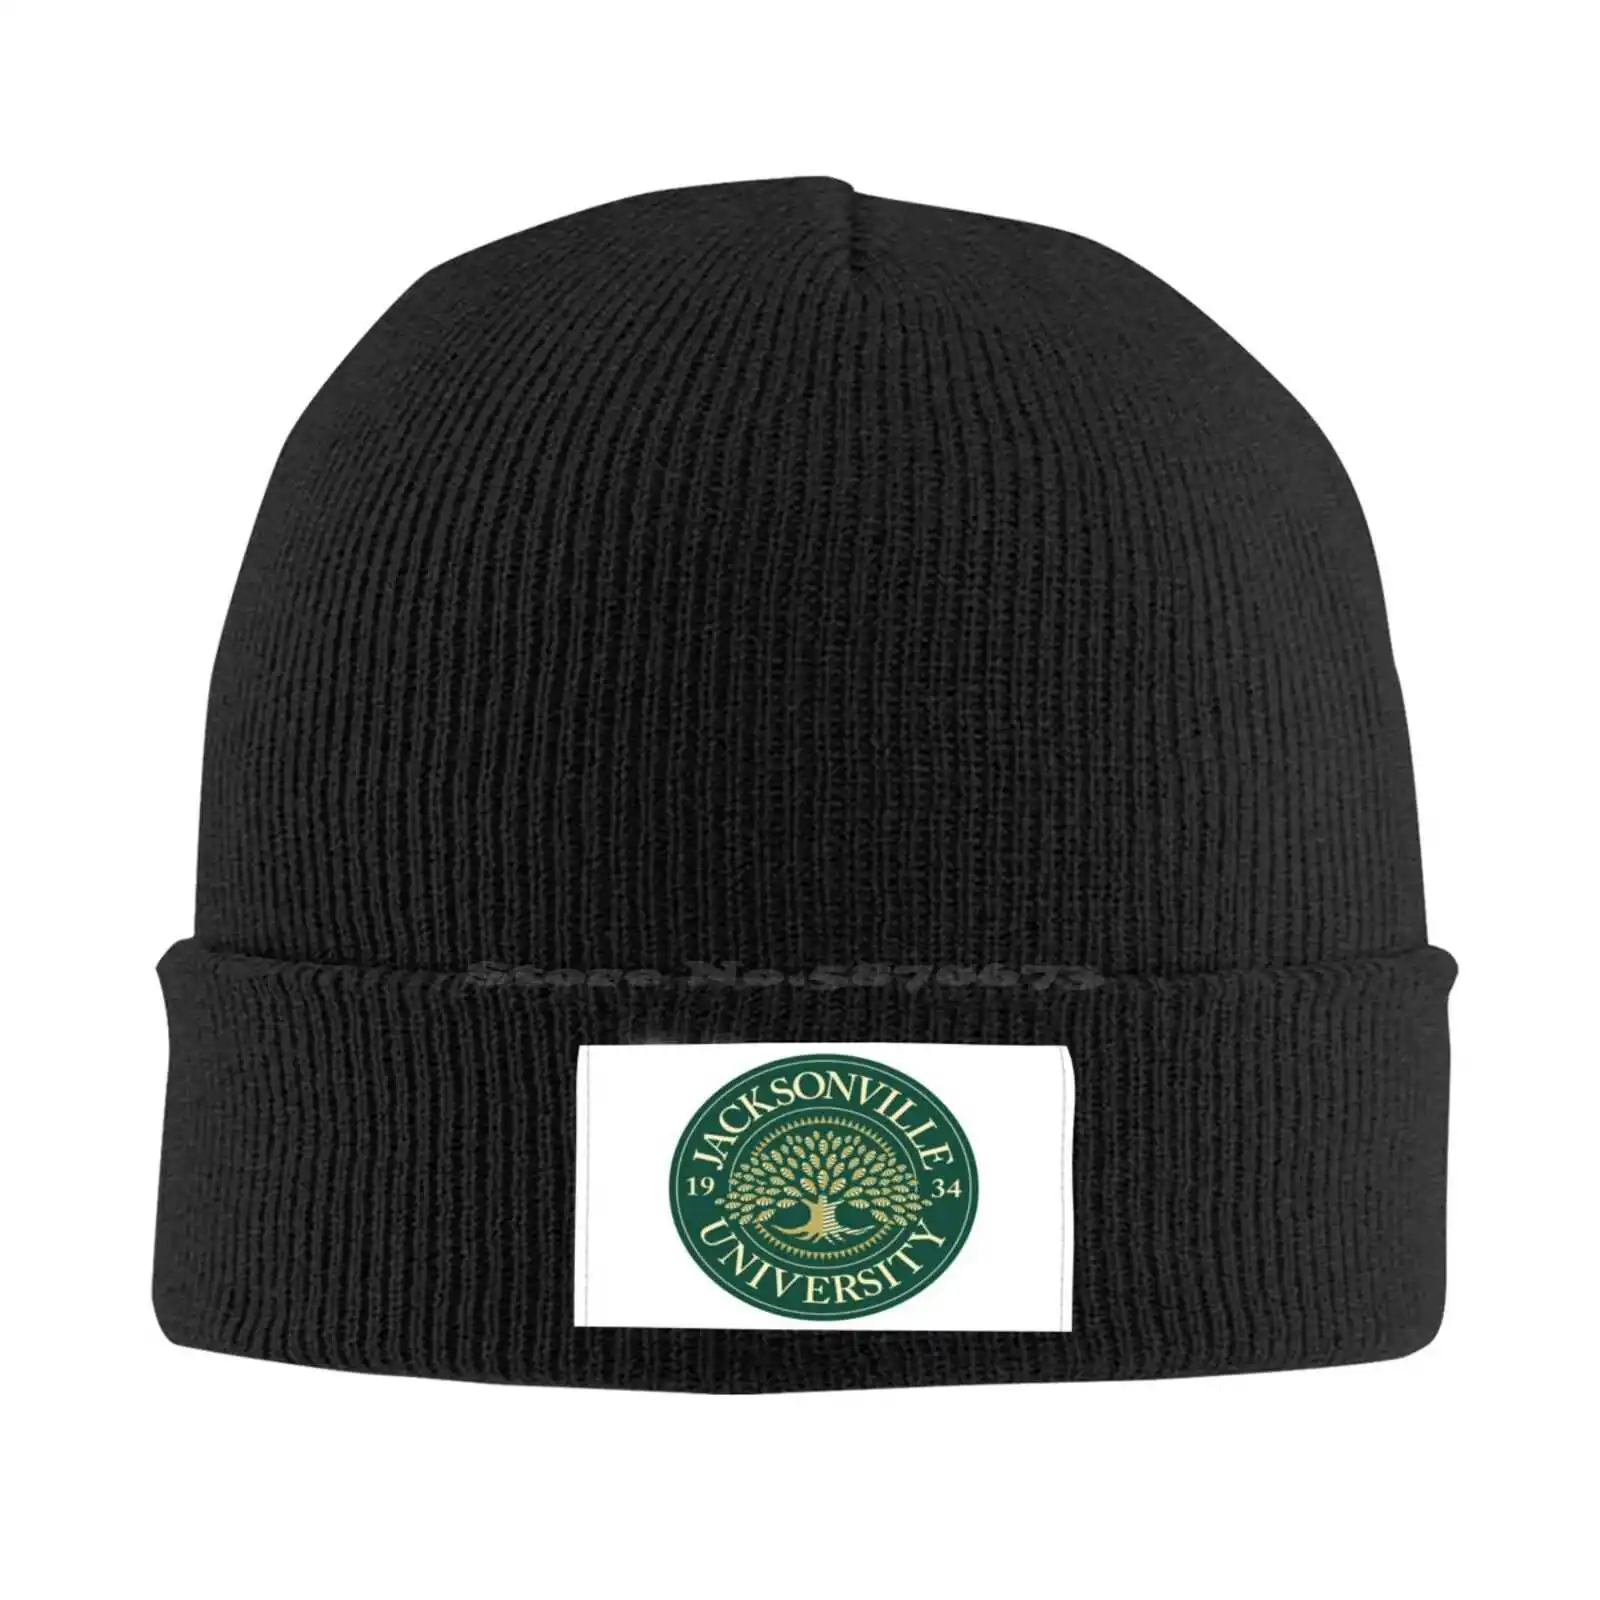 

Модная качественная бейсбольная кепка с логотипом университета Джексонвилл